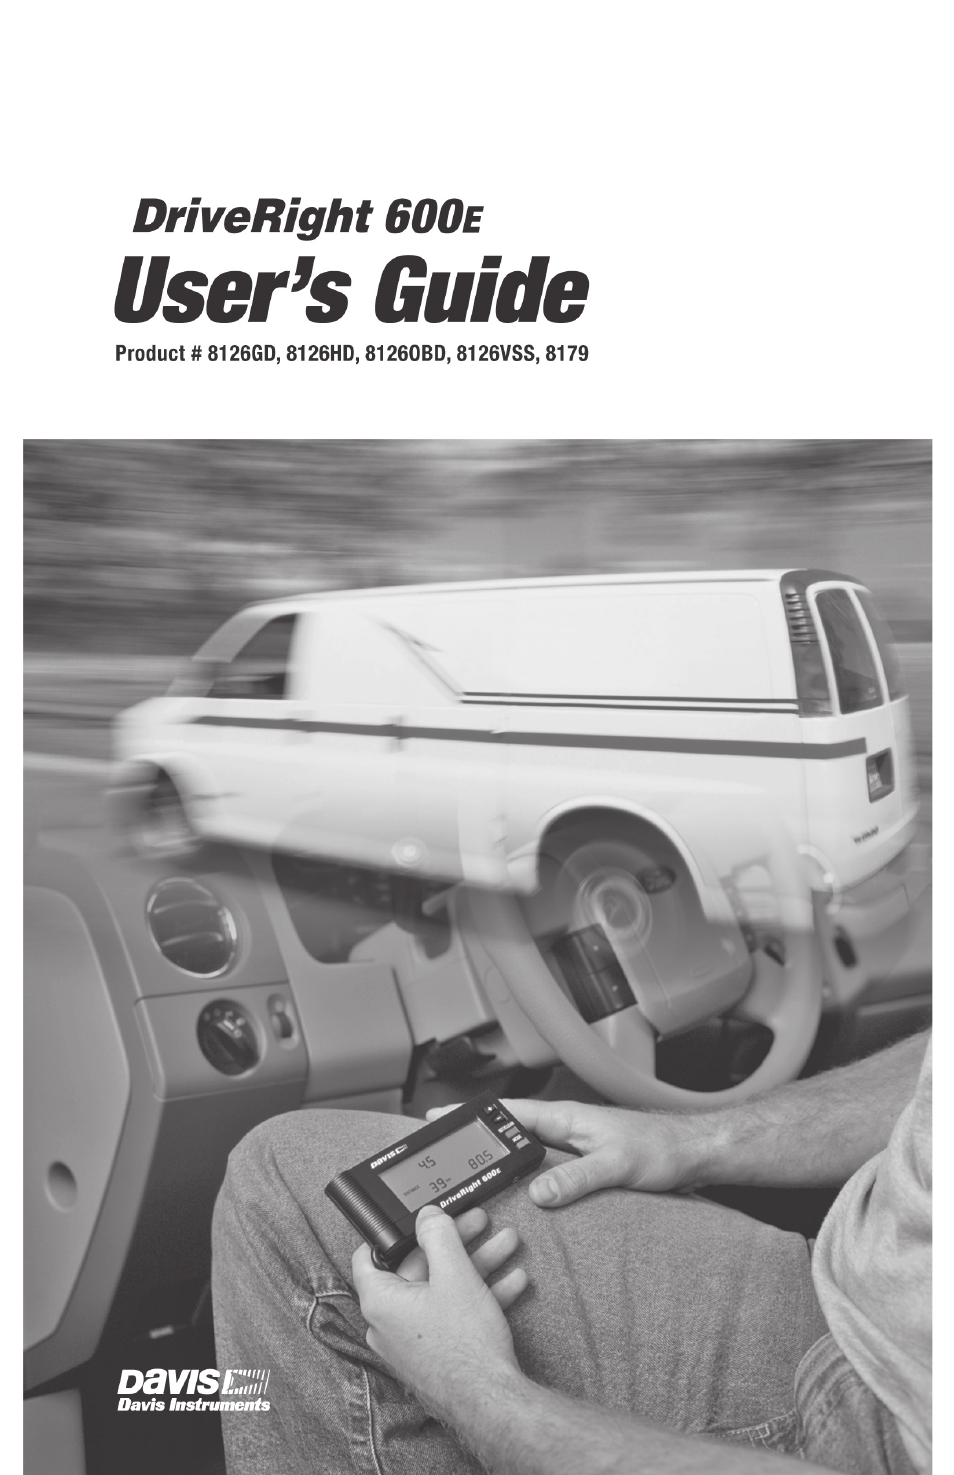 DriveRight 600E Users Guide (8126, 8179)